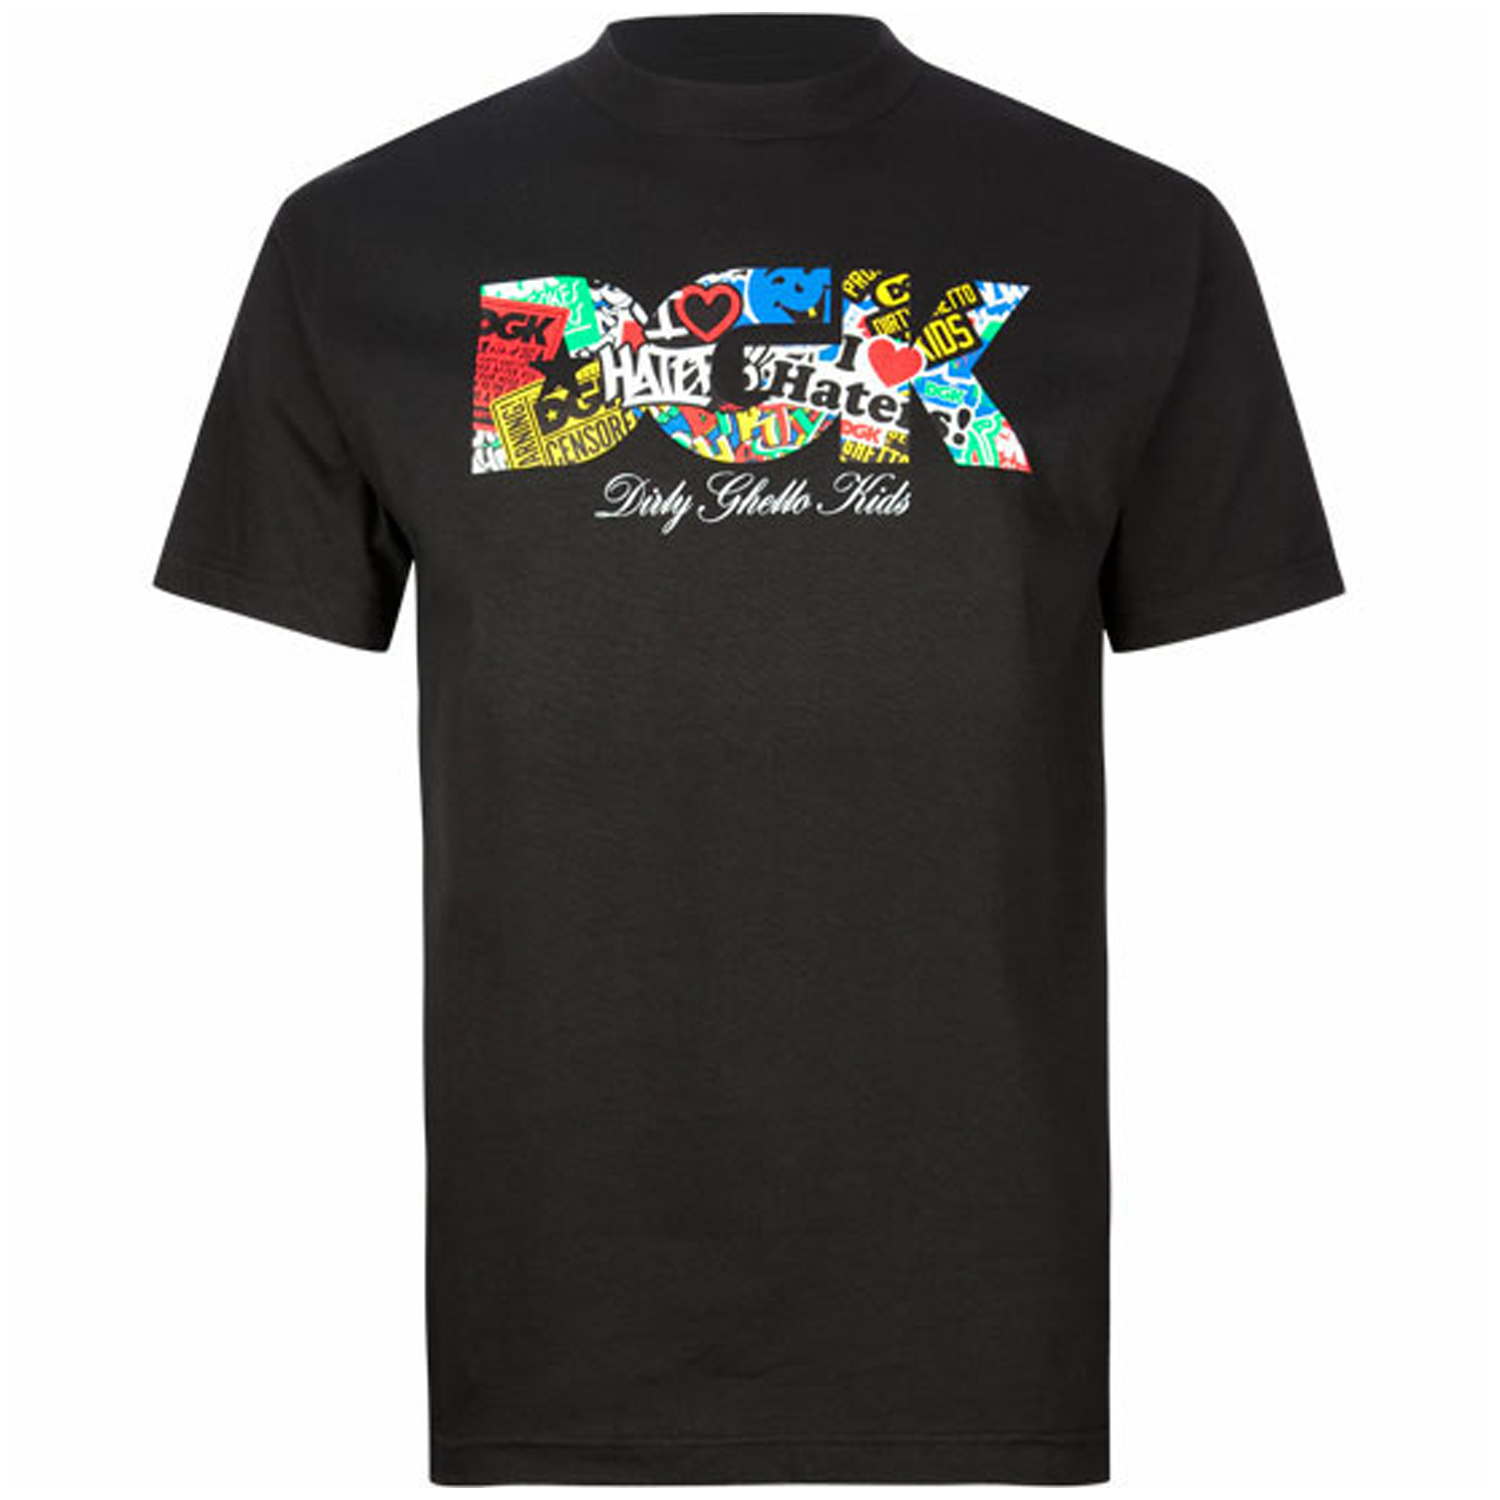 DGK Skateboards LOGO COLLAGE BLACK T-Shirt | eBay